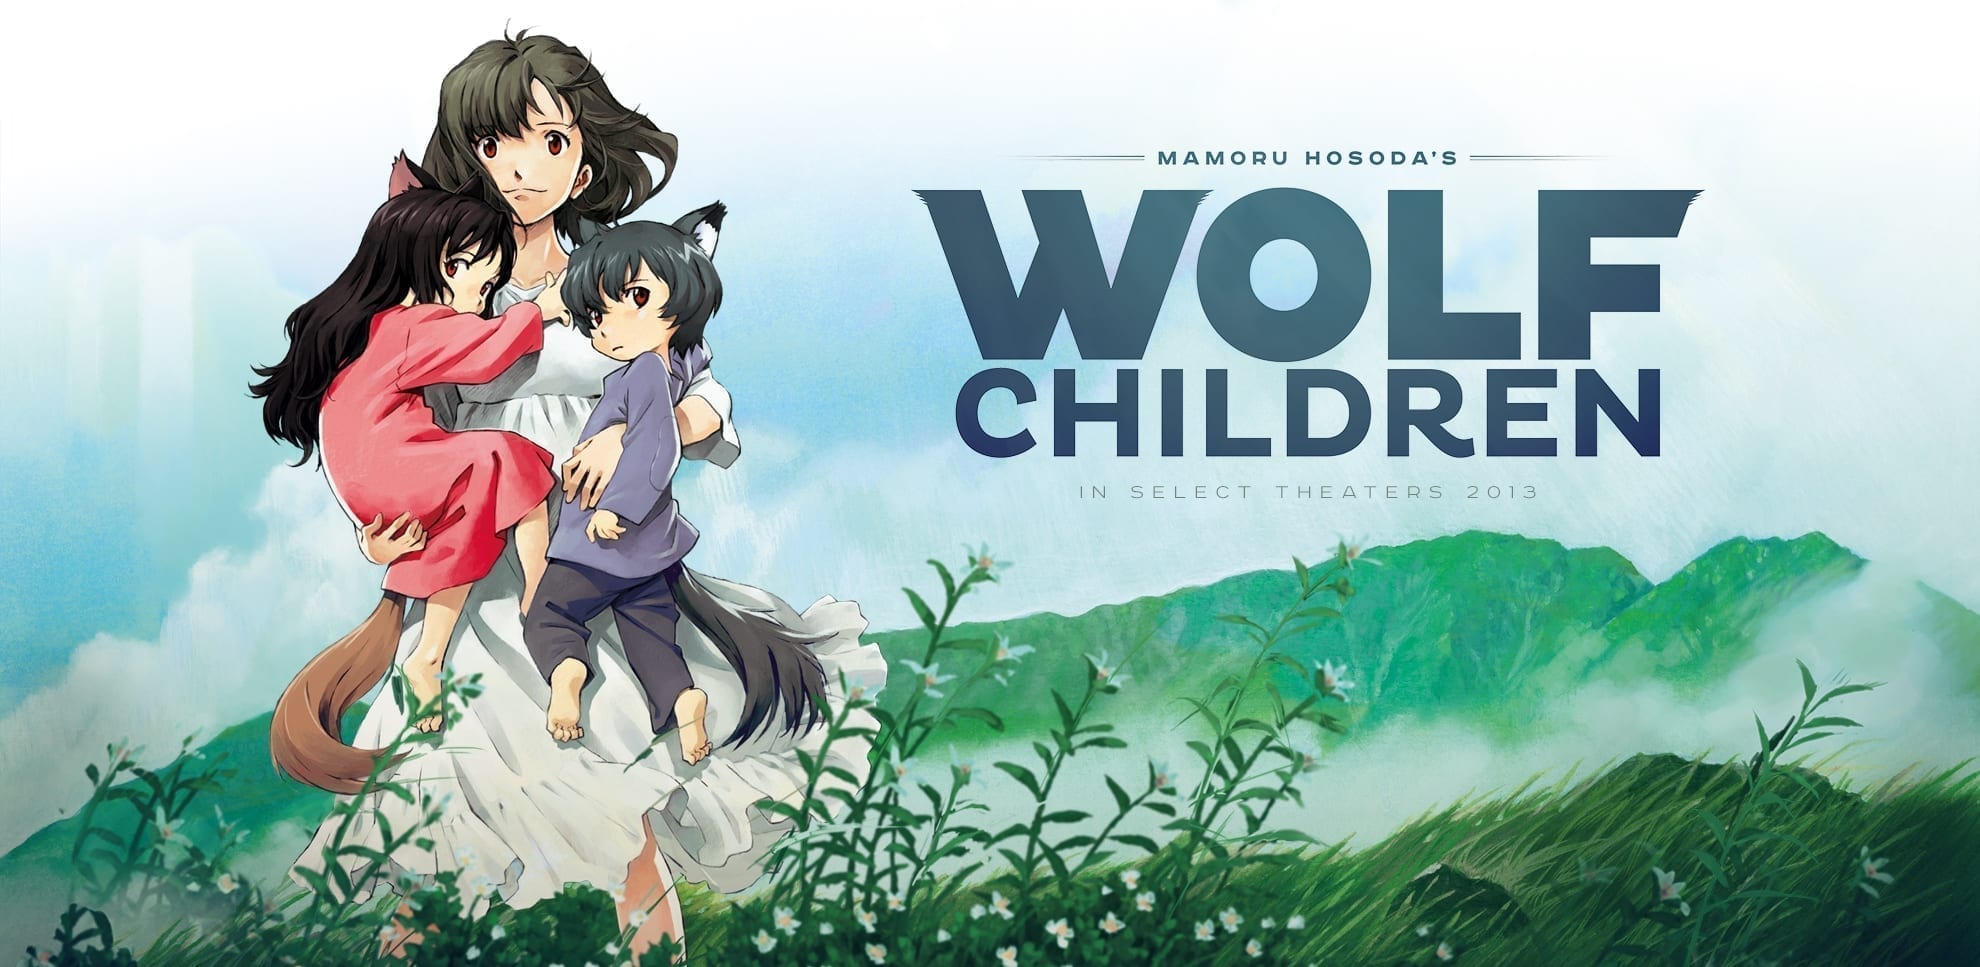 [Anime] Wilcze dzieci - jak wychować małe wilczęta?